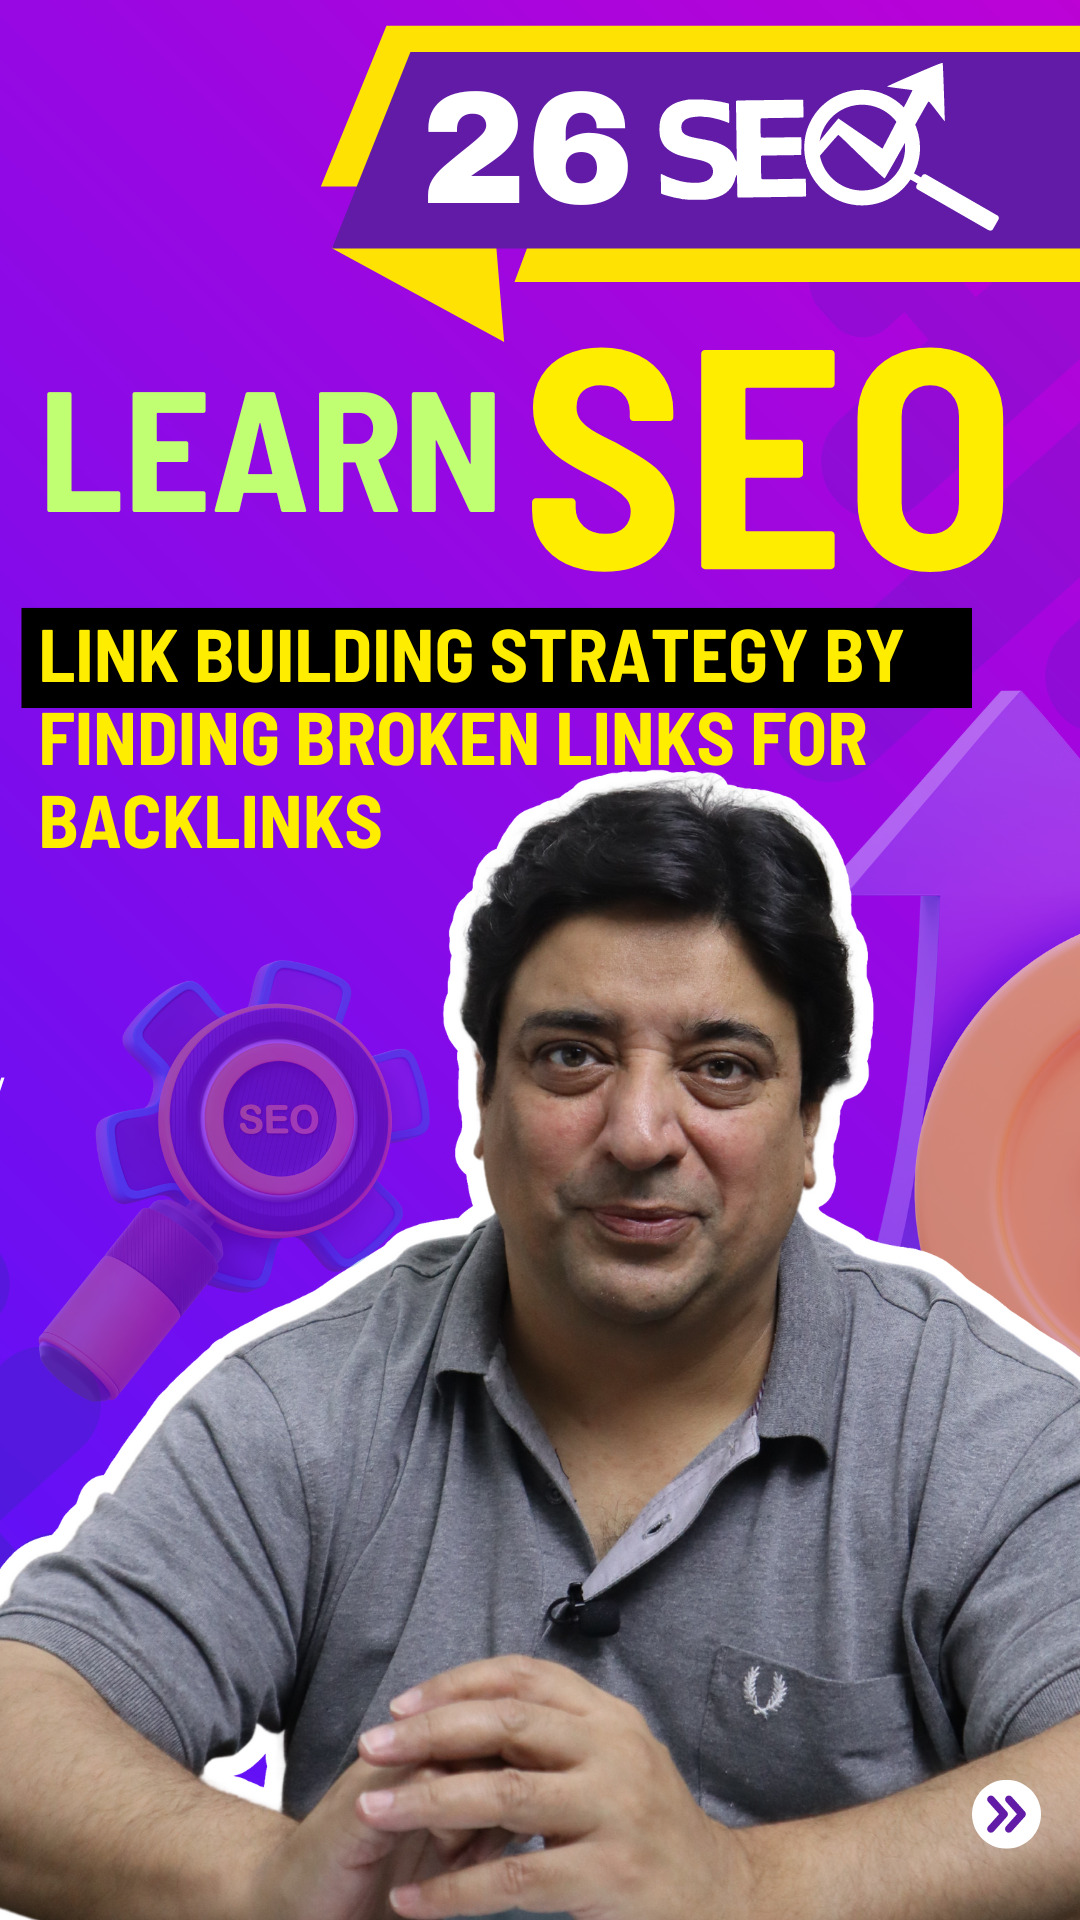 Link-building strategy for finding broken links for backlinks